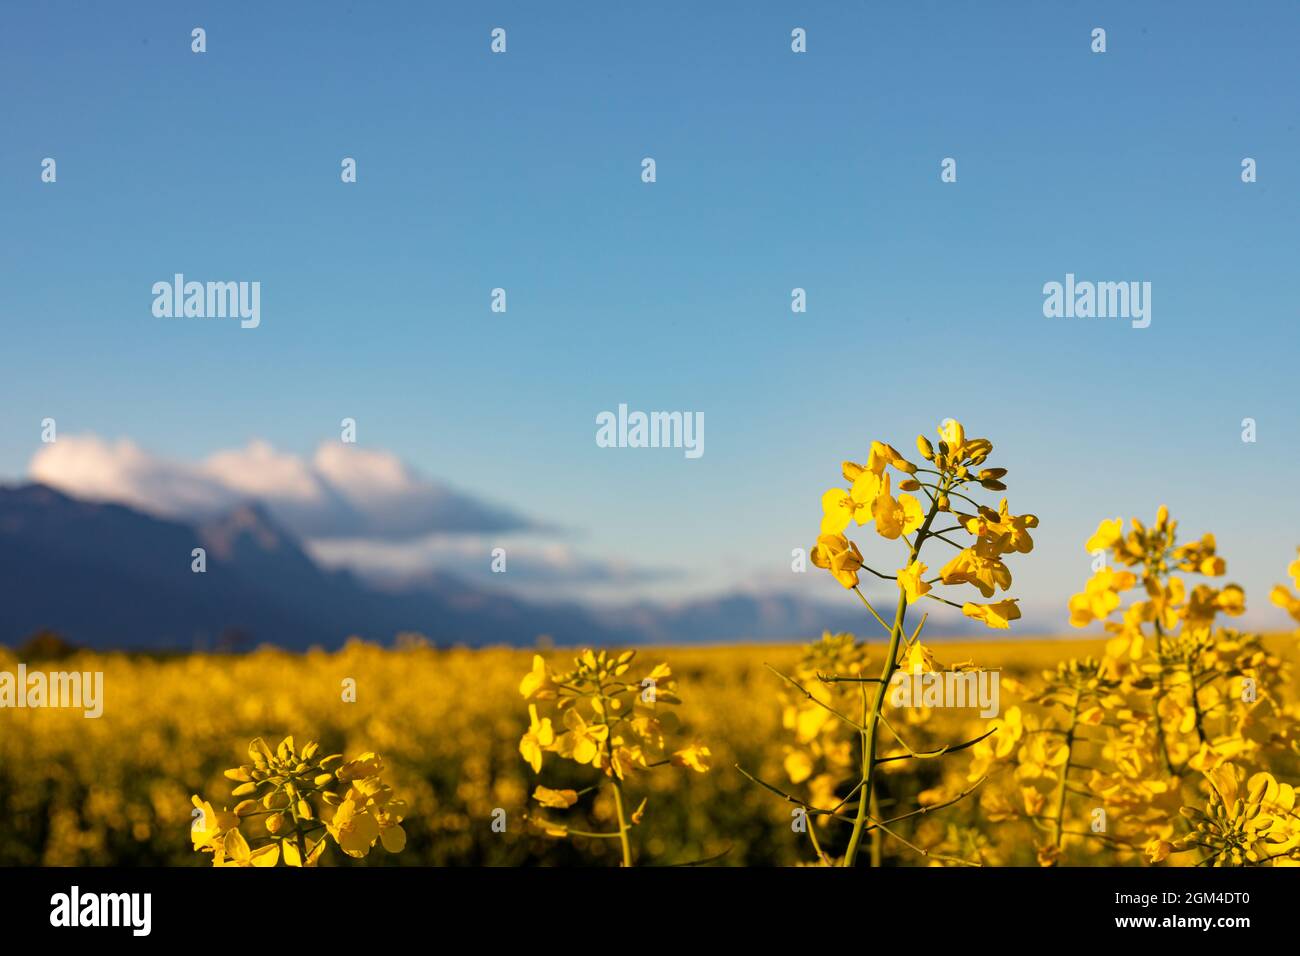 Gros plan de la fleur jaune dans le paysage de campagne avec ciel sans nuages Banque D'Images